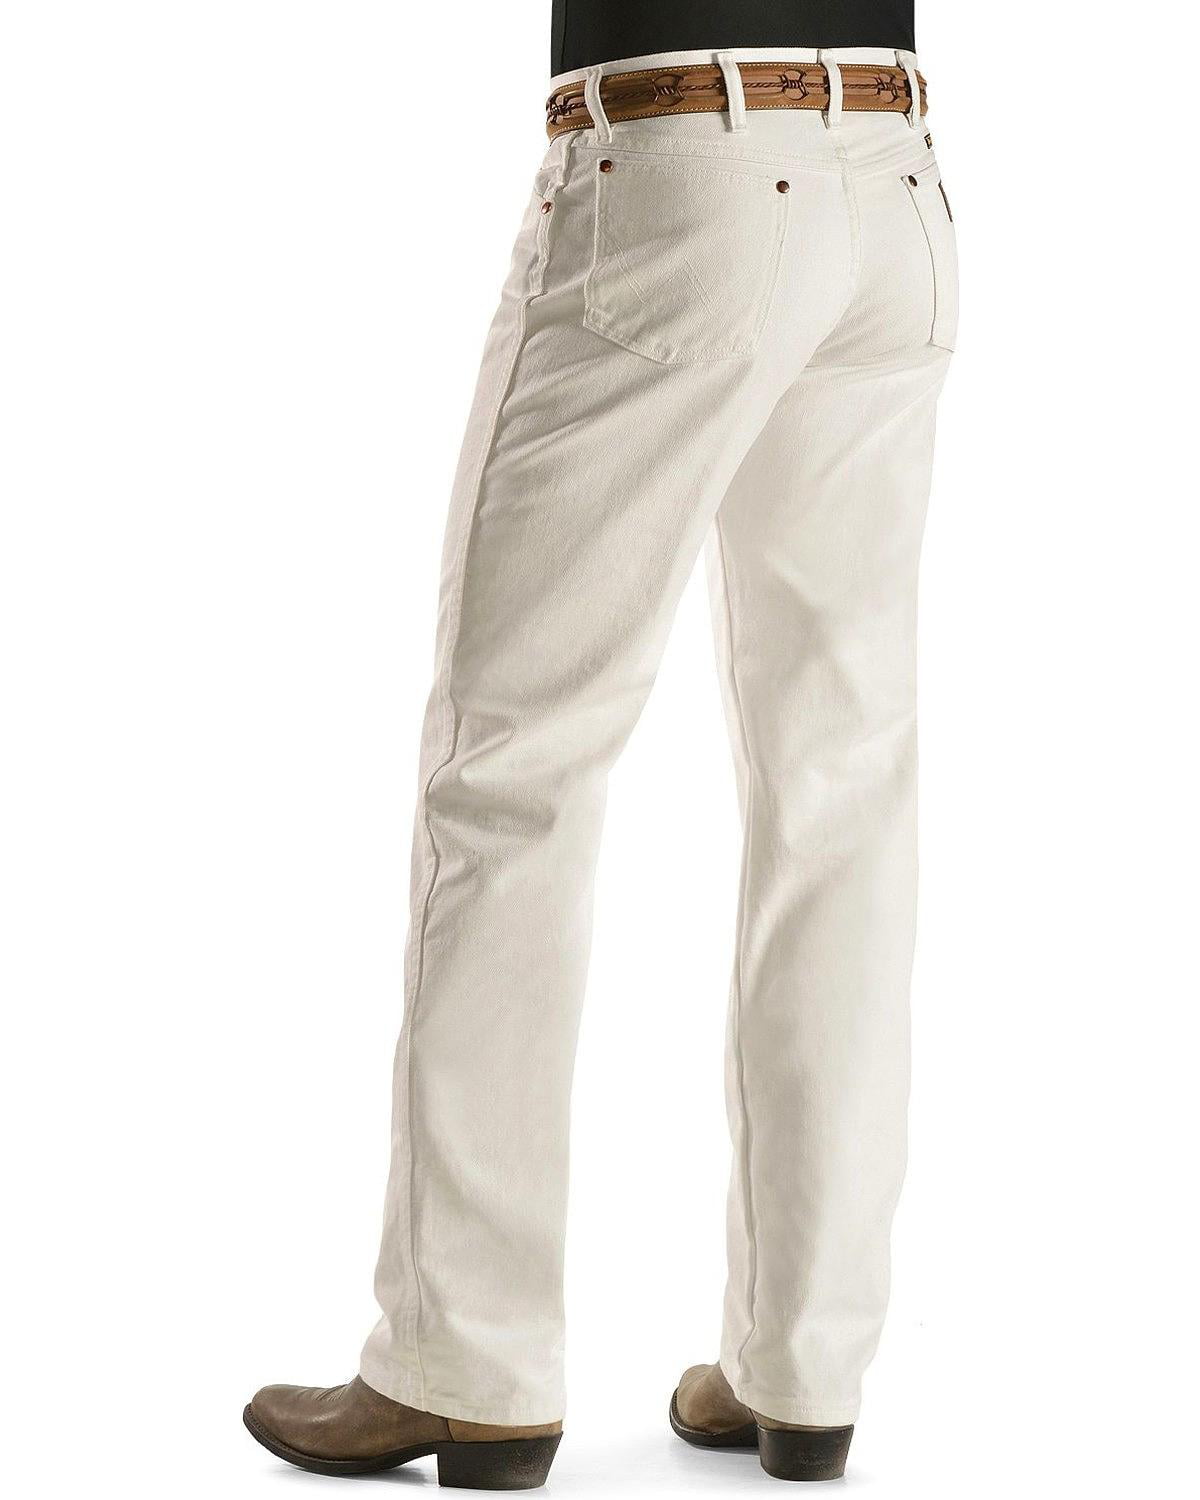 wrangler white pants